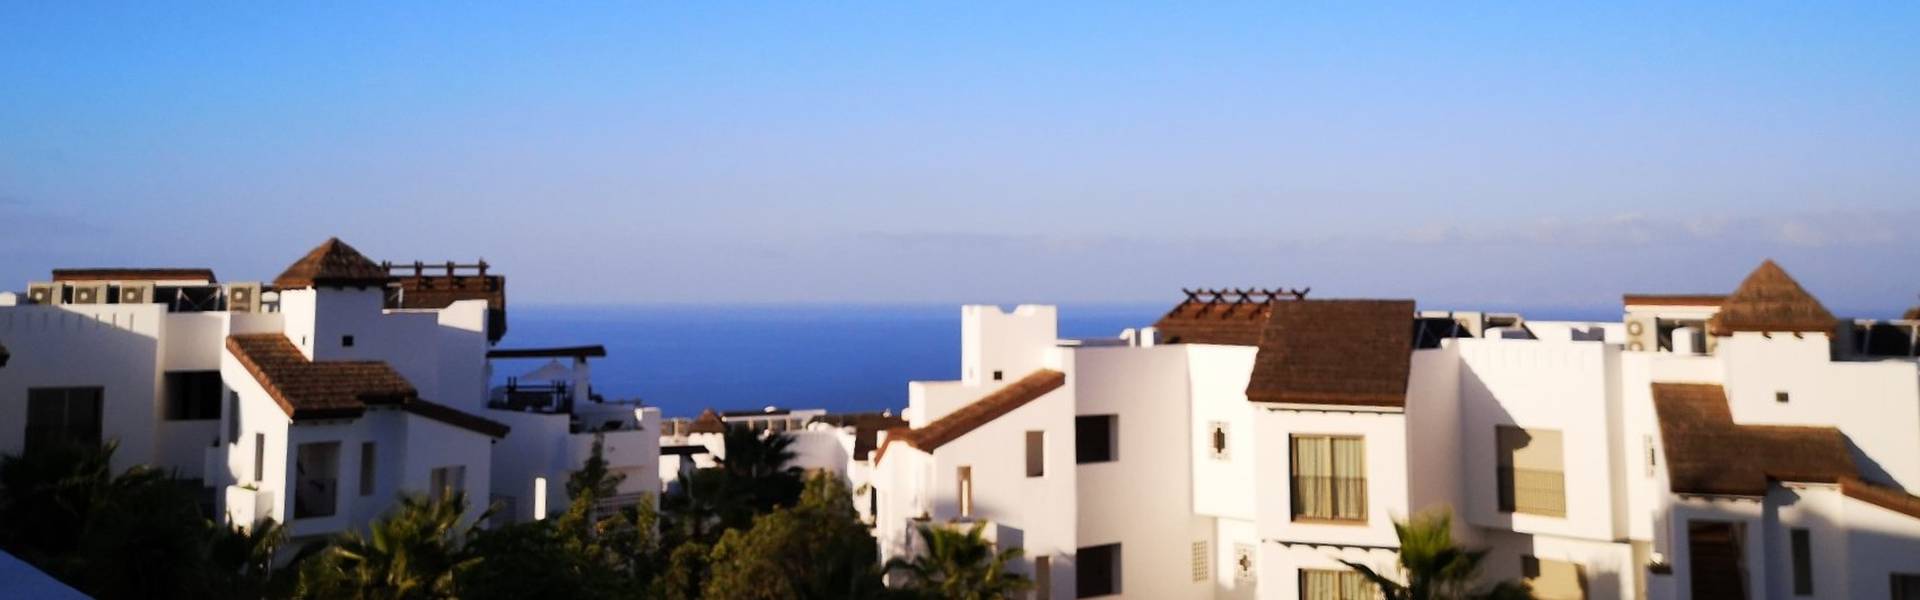  Las Terrazas de Abama Suites Hotel Tenerife